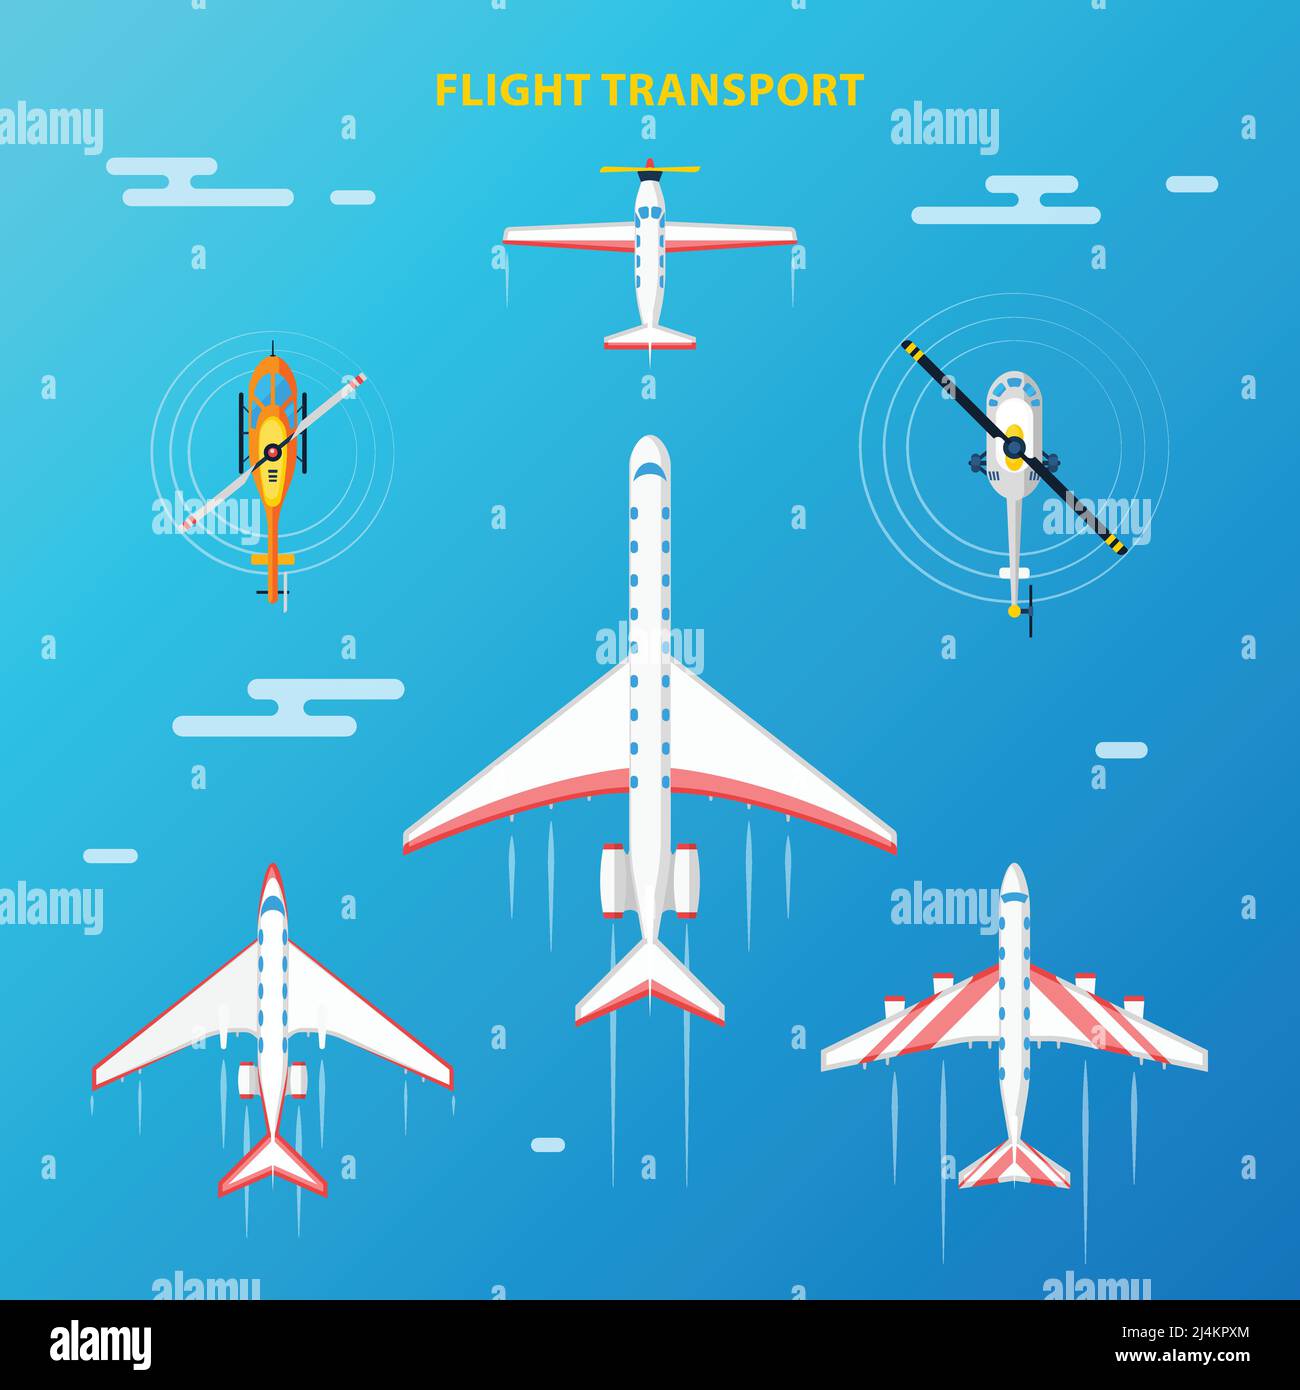 Transport aérien à la collecte de vol vue de dessus avec des hélicoptères et illustration vectorielle abstraite d'arrière-plan bleu ciel d'avions Illustration de Vecteur